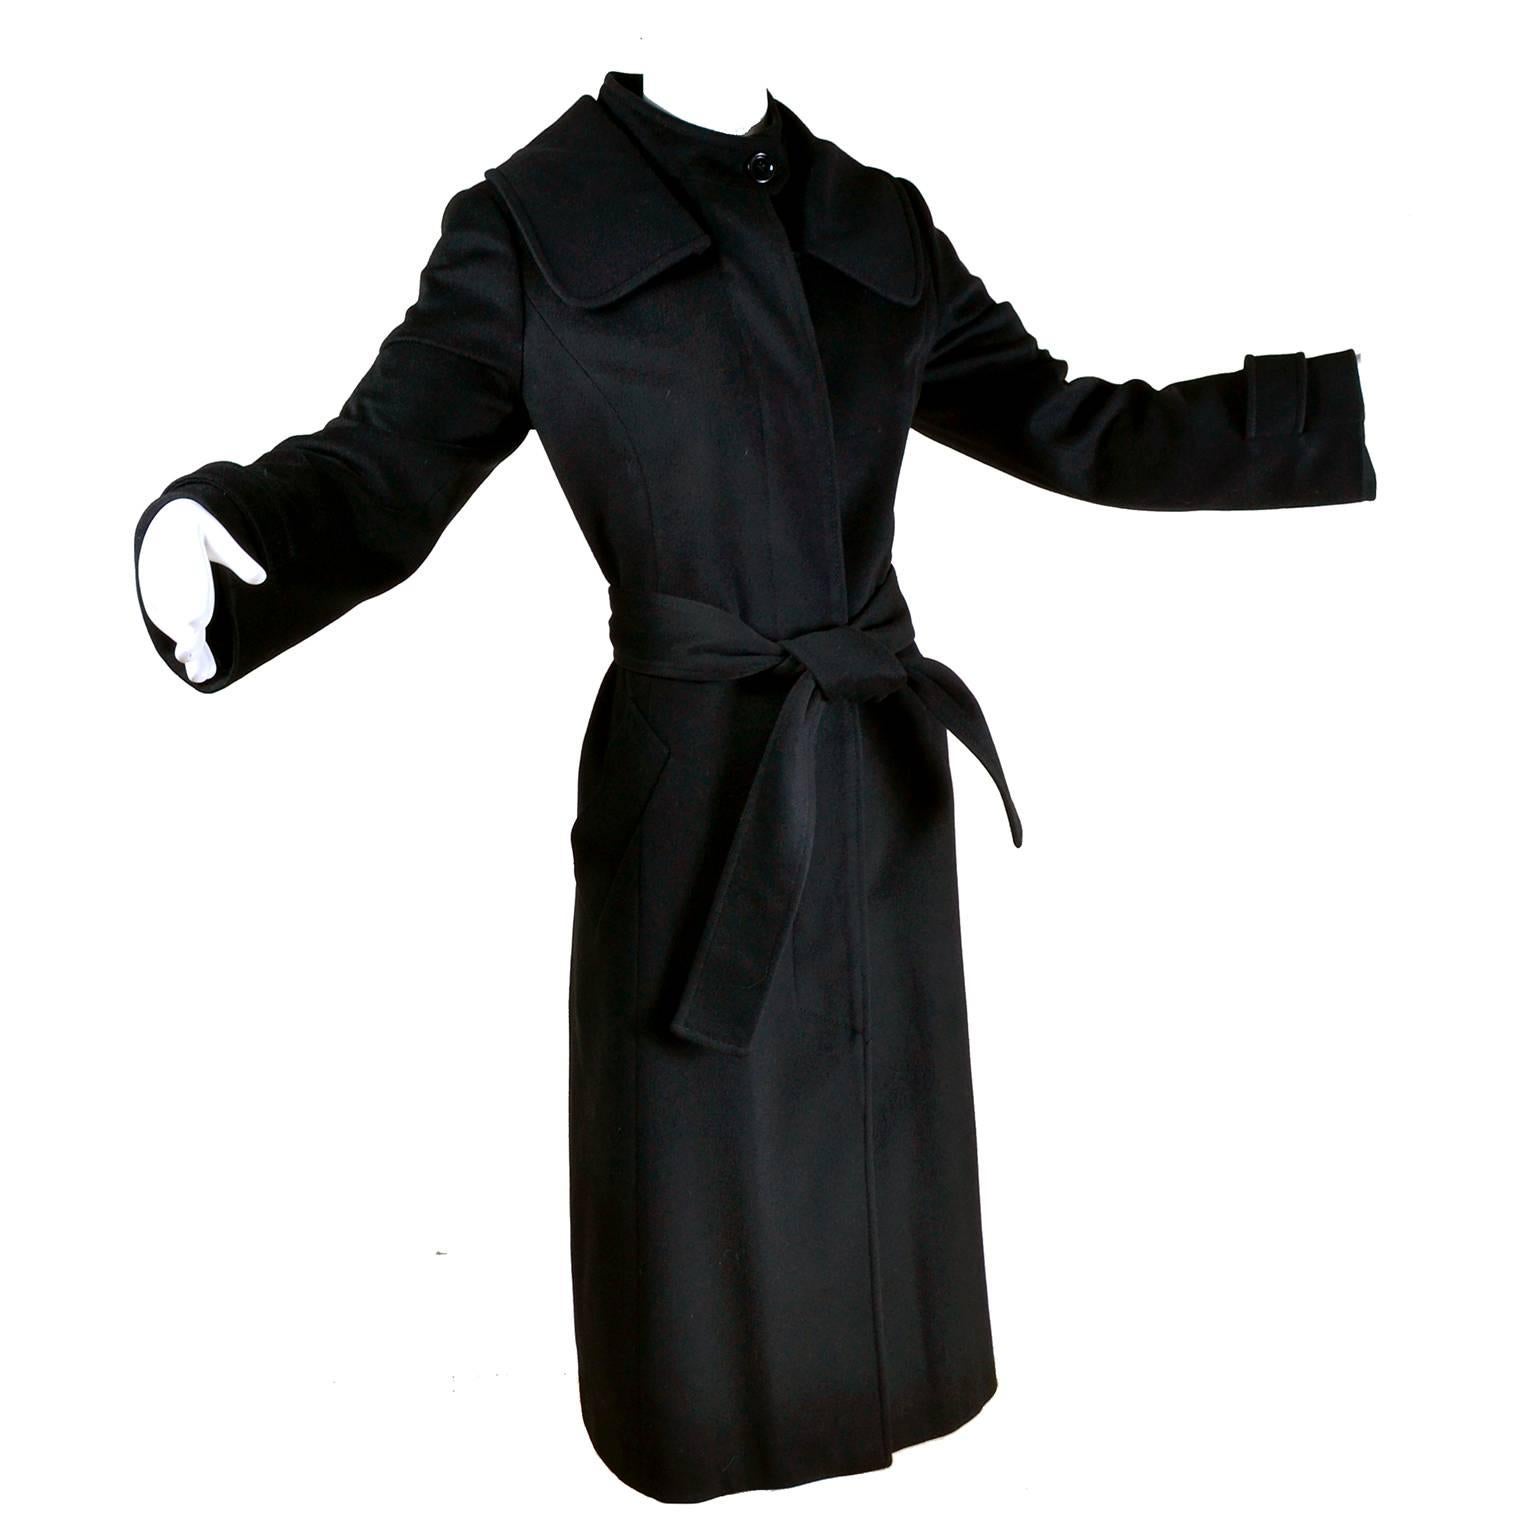 Dolce & Gabbana Vintage Black Cashmere & Wool Coat With Belt 8/10